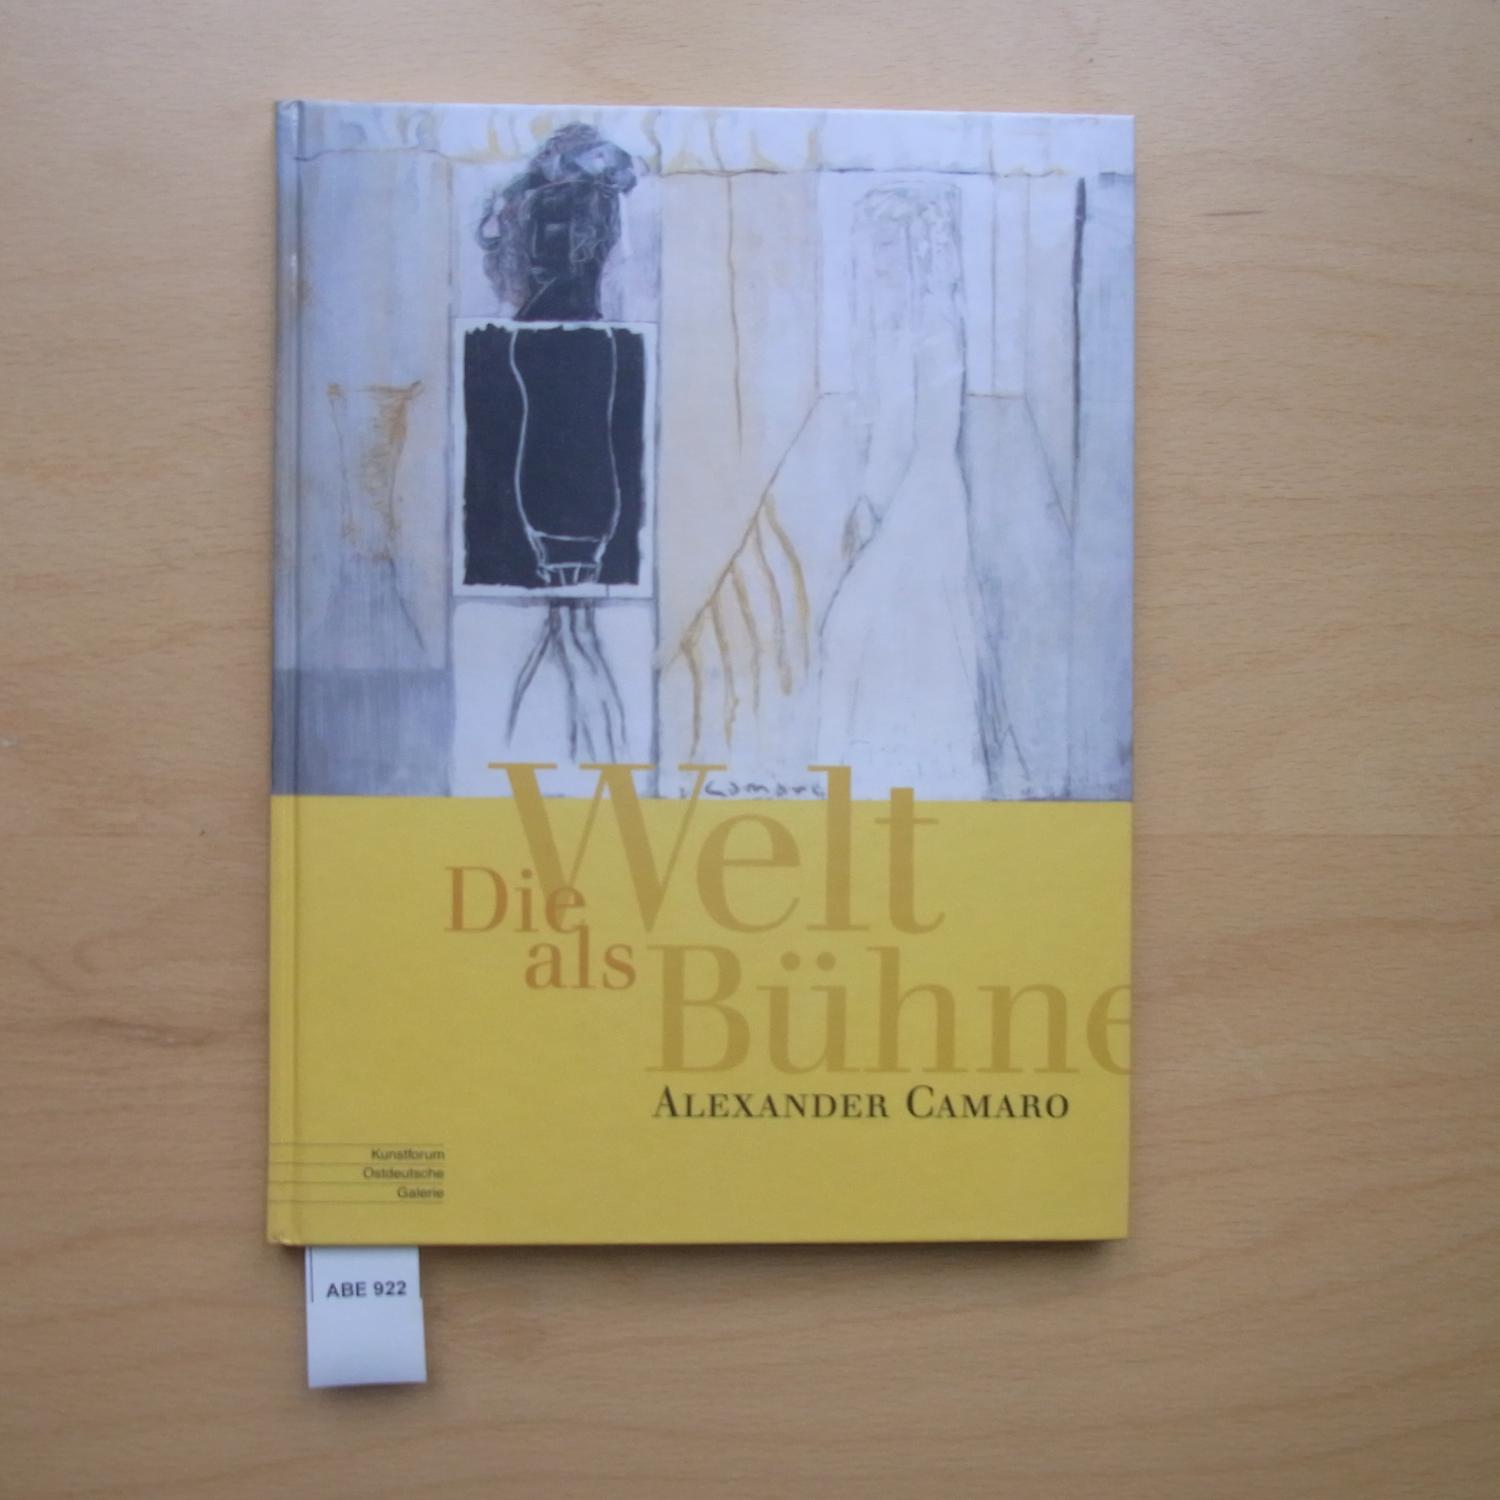 Die Welt als Bühne - Alexander Camaro : (1901 - 1992) ; Kunstforum Ostdeutsche Galerie, Regensburg, 21. November 2004 bis 30. Januar 2005.